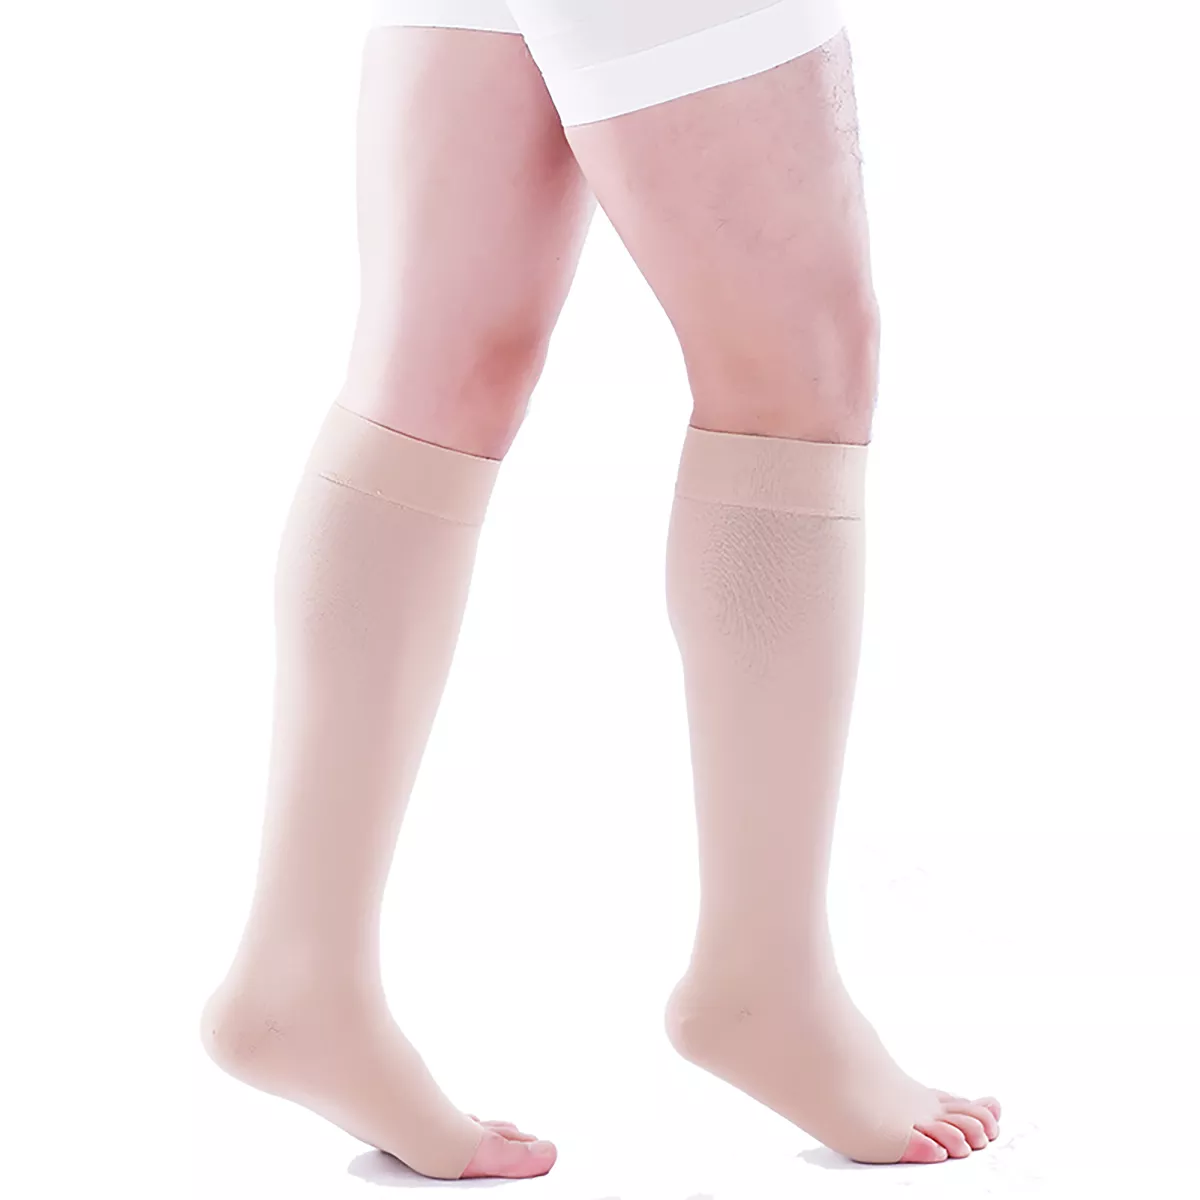 Varcoh ® 15-20 mmHg Men Knee High Open Toe Compression Socks Beige